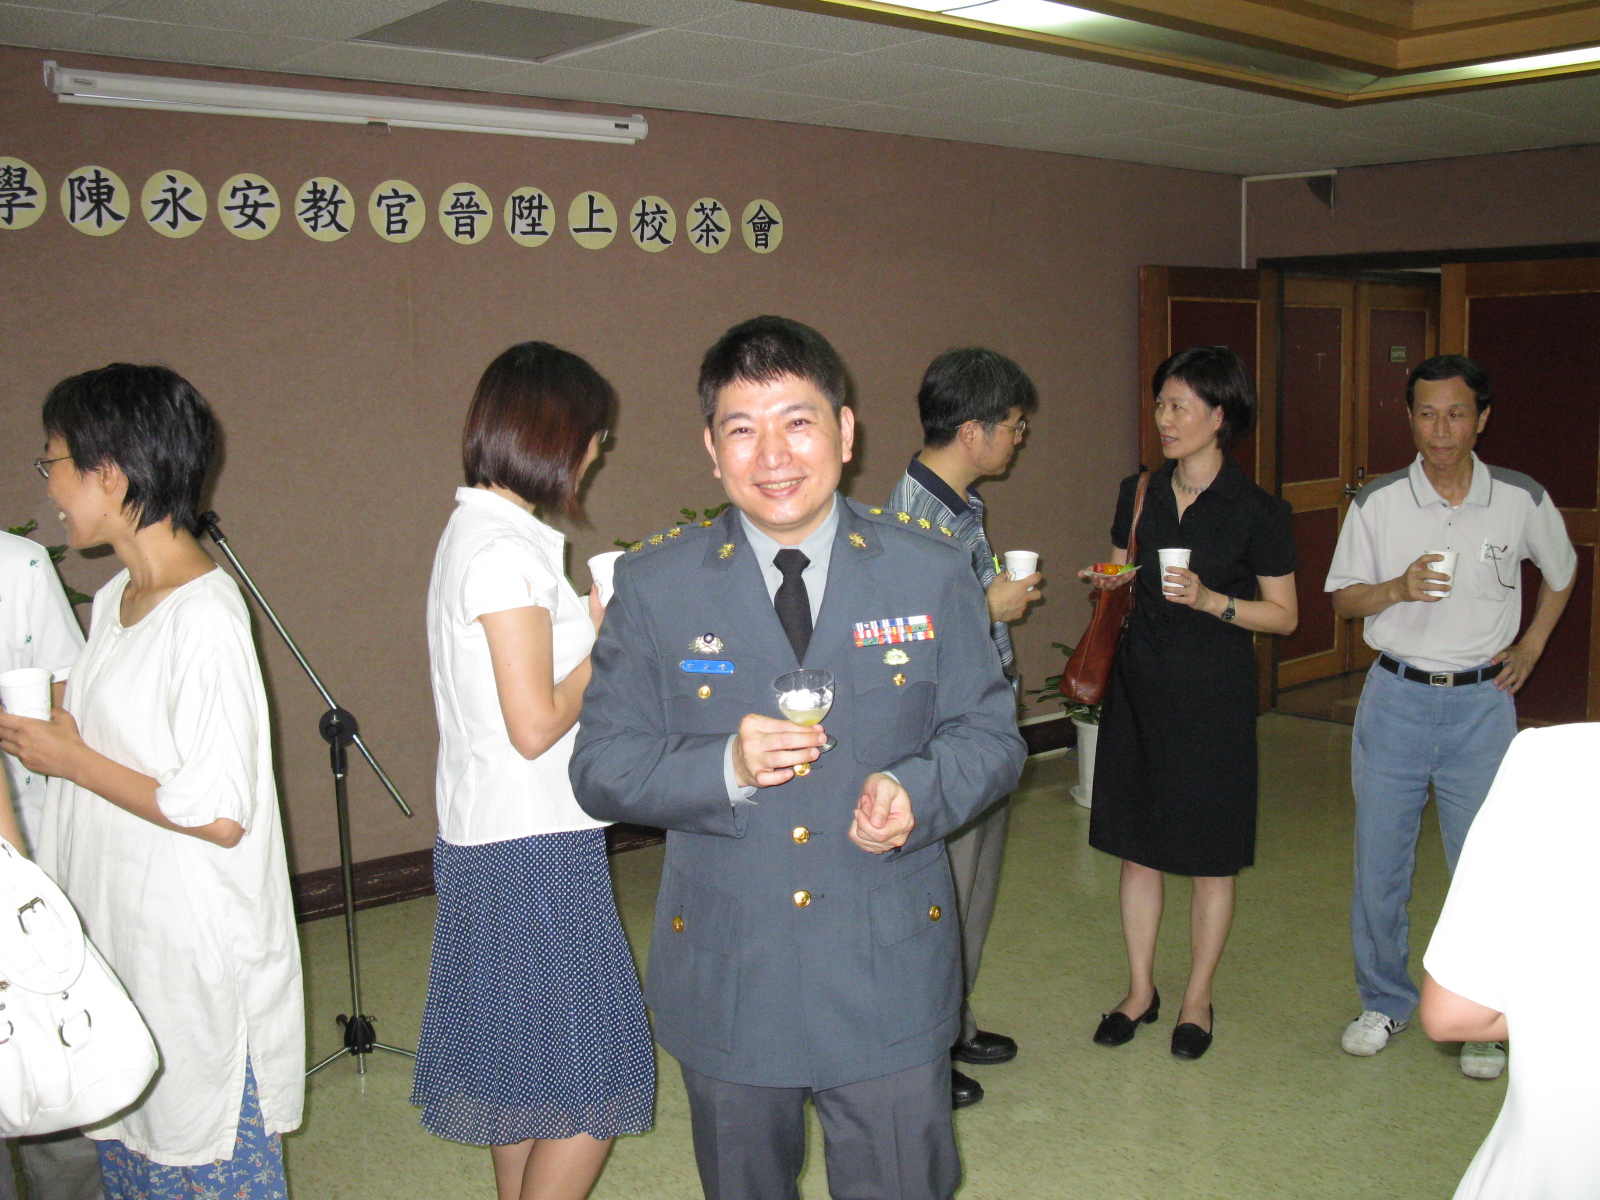 2010年7月1日陳永安教官晉昇茶會